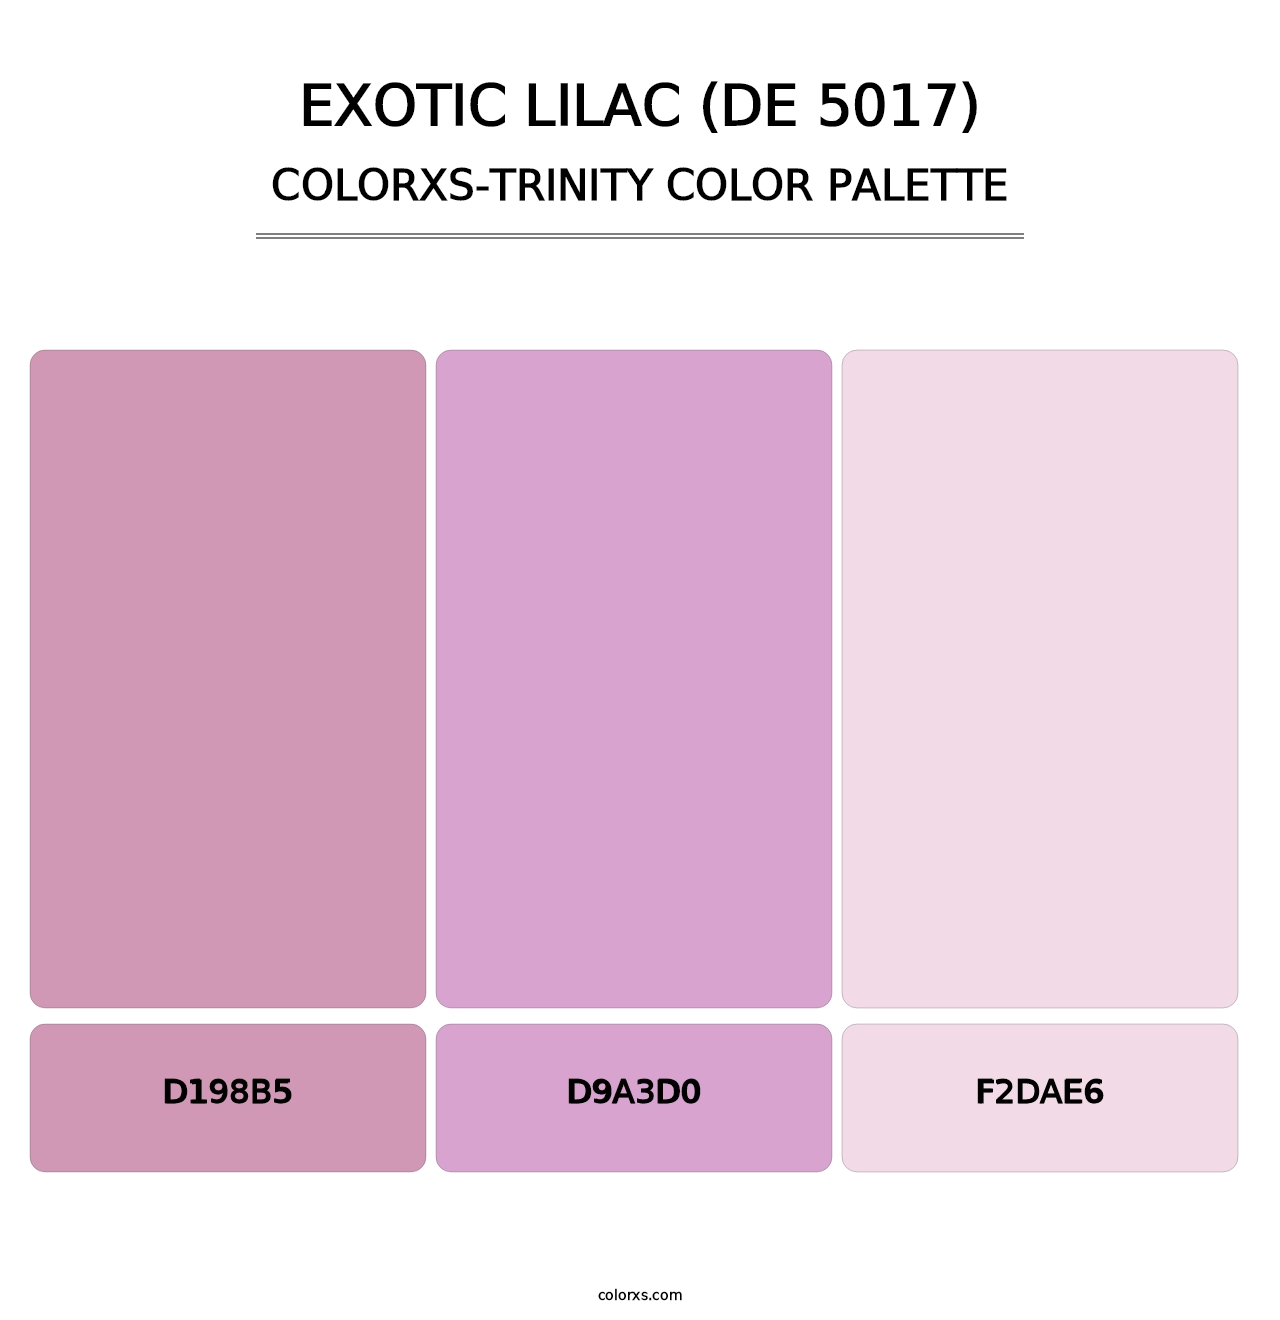 Exotic Lilac (DE 5017) - Colorxs Trinity Palette